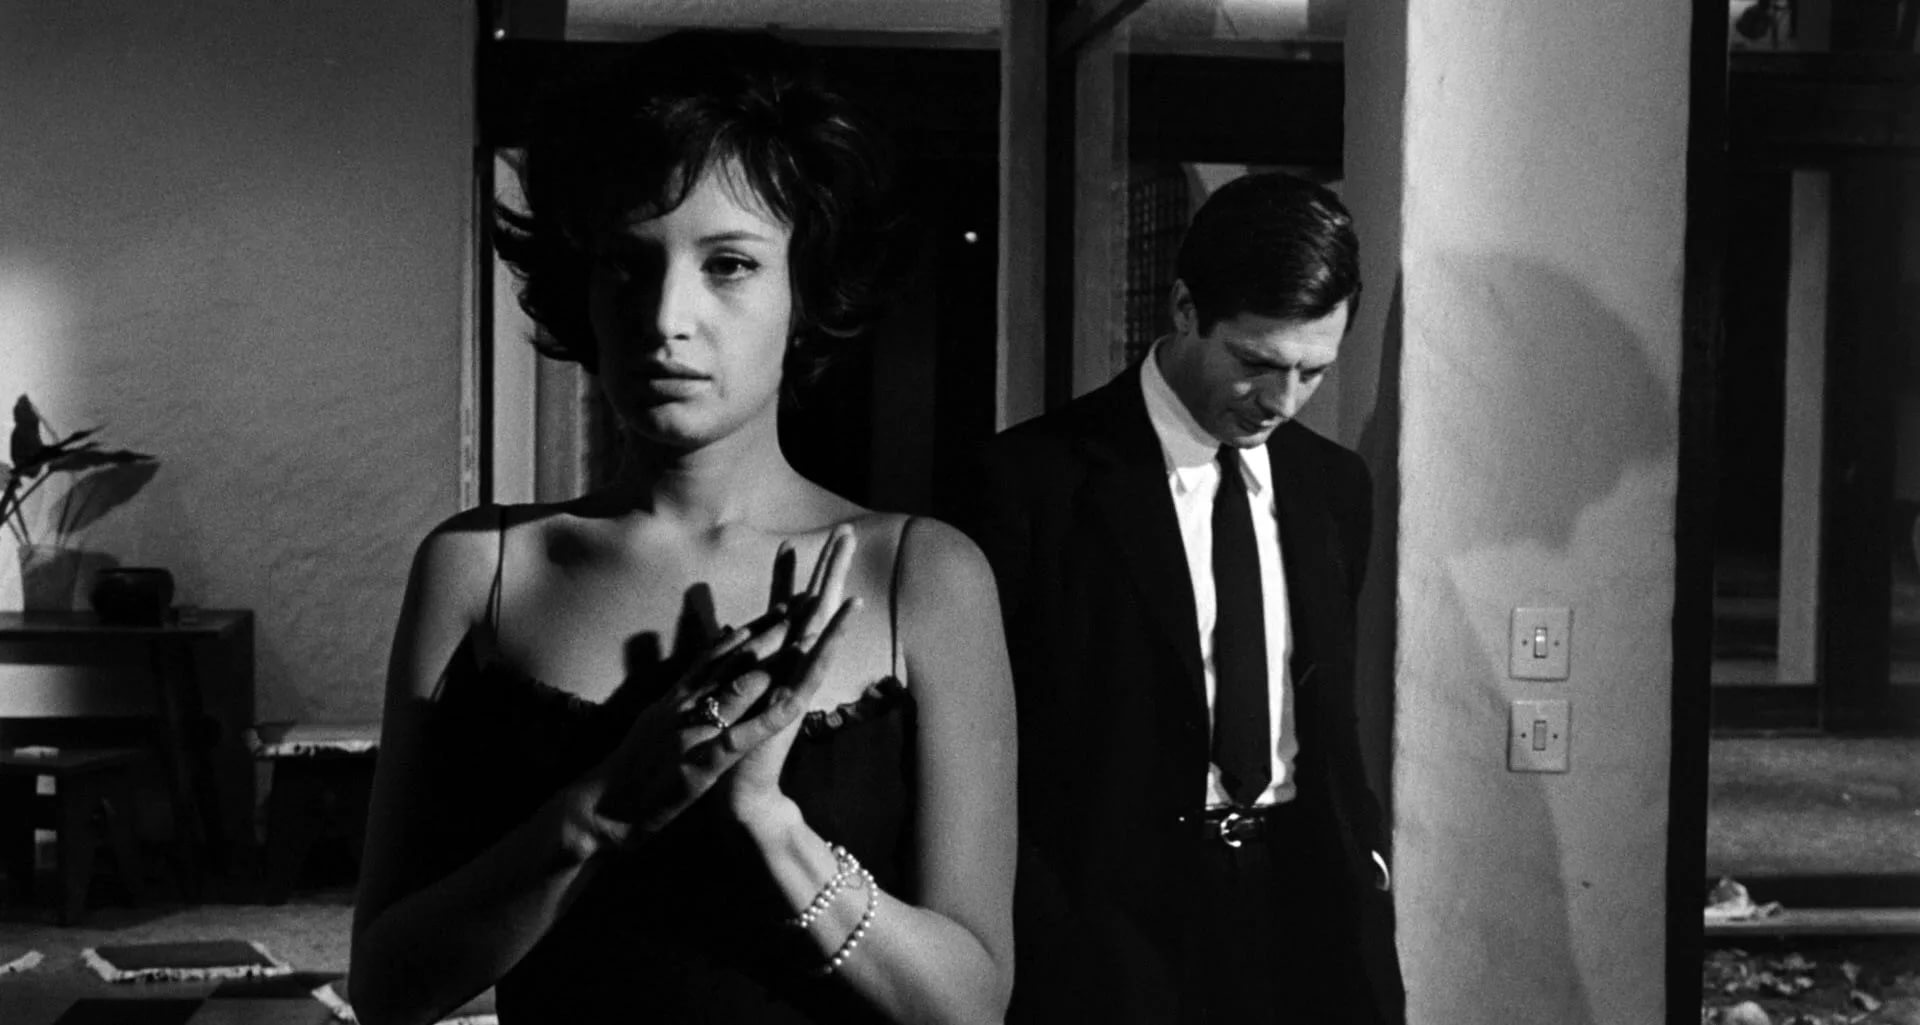 Неожиданно расстались. Антониони Клер. Ночь Антониони. Ночь la notte, 1961.